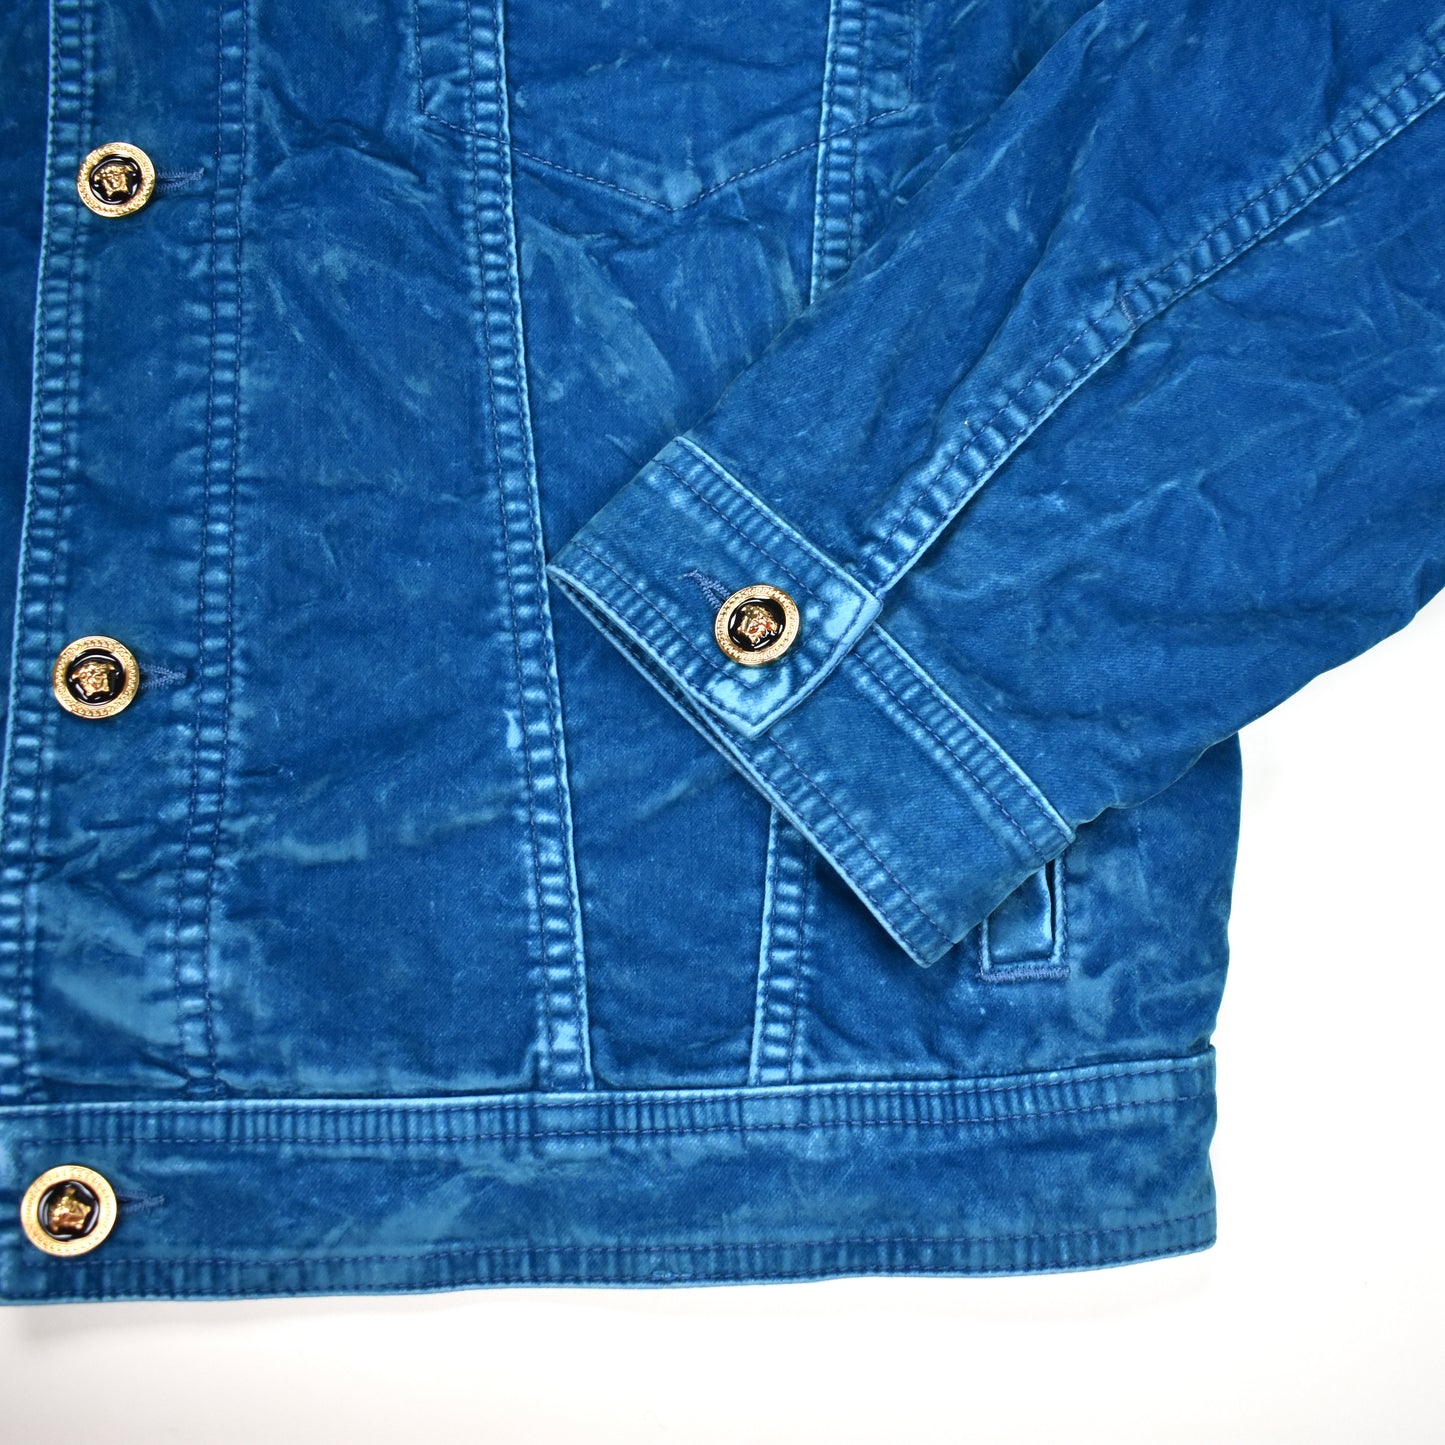 Versace - Blue Velvet Medusa Button Trucker Jacket